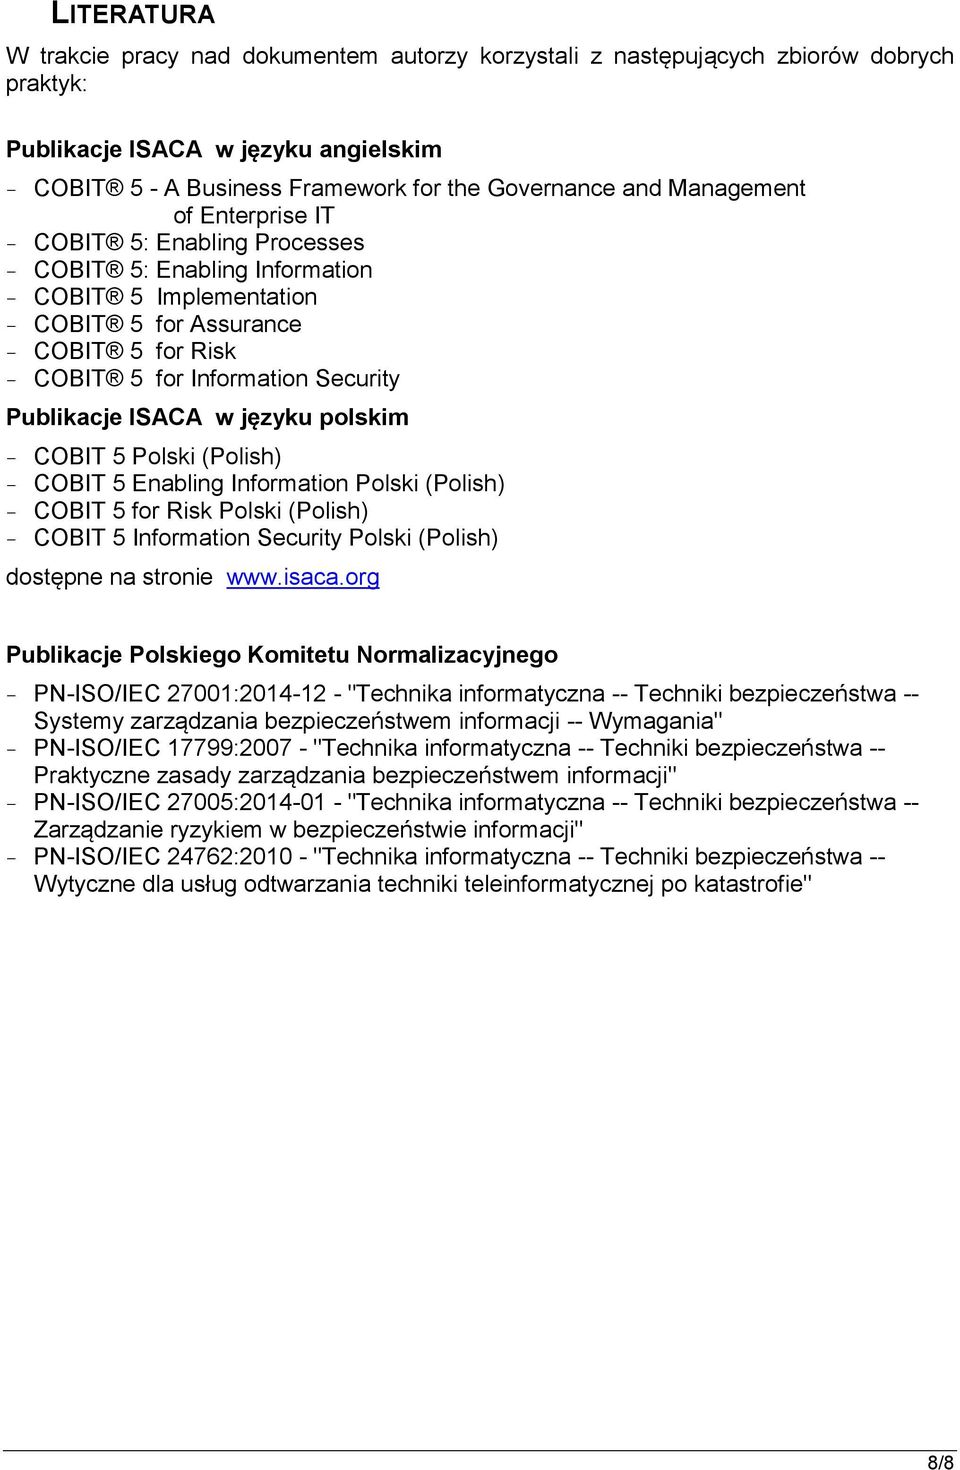 Publikacje ISACA w języku polskim - COBIT 5 Polski (Polish) - COBIT 5 Enabling Information Polski (Polish) - COBIT 5 for Risk Polski (Polish) - COBIT 5 Information Security Polski (Polish) dostępne